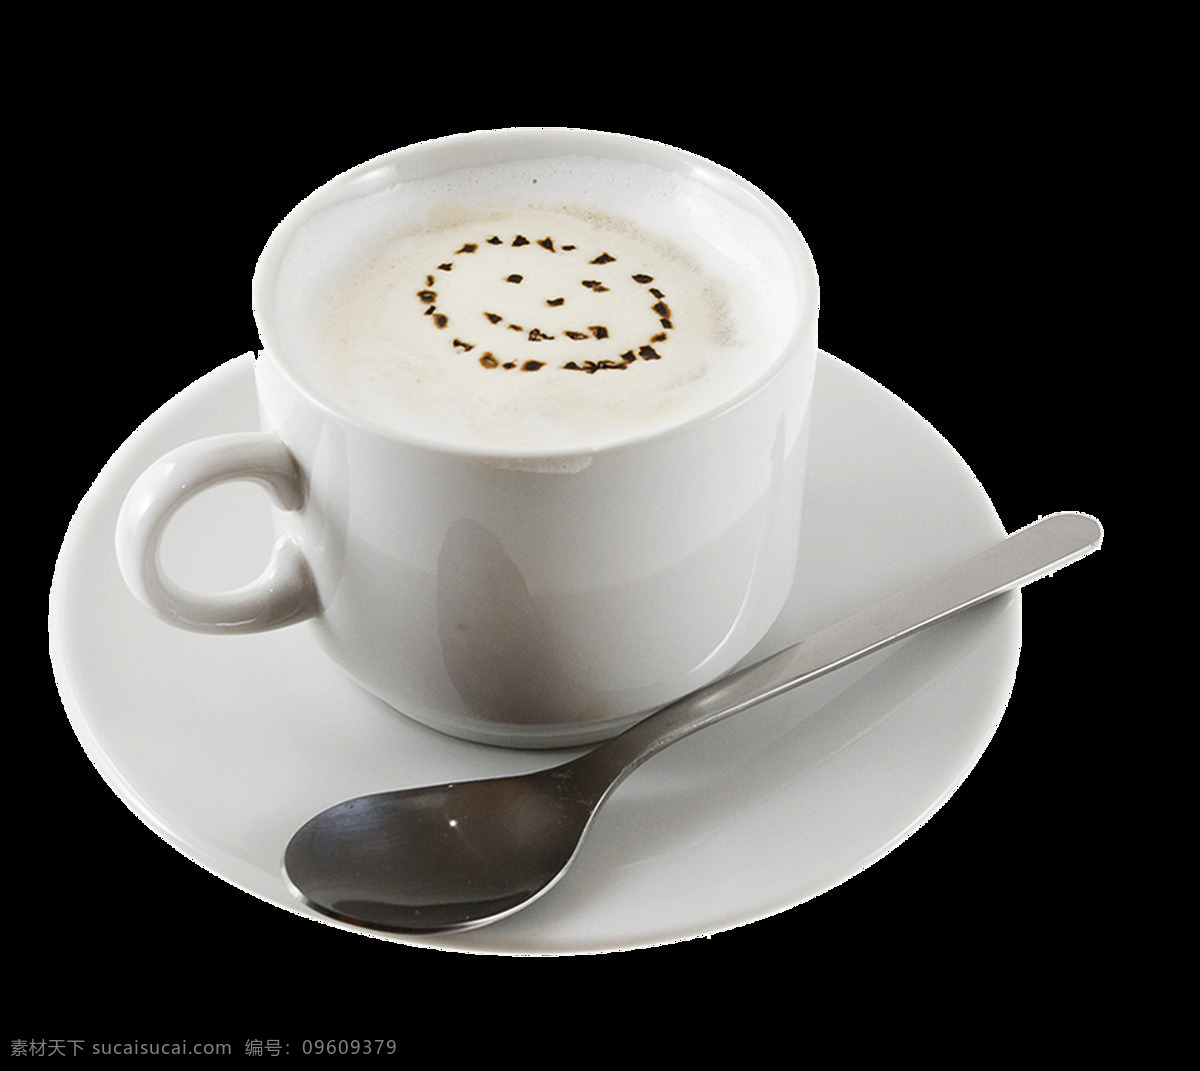 热奶咖啡 喝 热咖啡 享受 冰咖啡 黑咖啡 白咖啡 咖啡机 咖啡店 咖啡因 咖啡馆 热饮 饮料 杯子 咖啡杯 咖啡拉花 下午茶 餐饮美食 元素